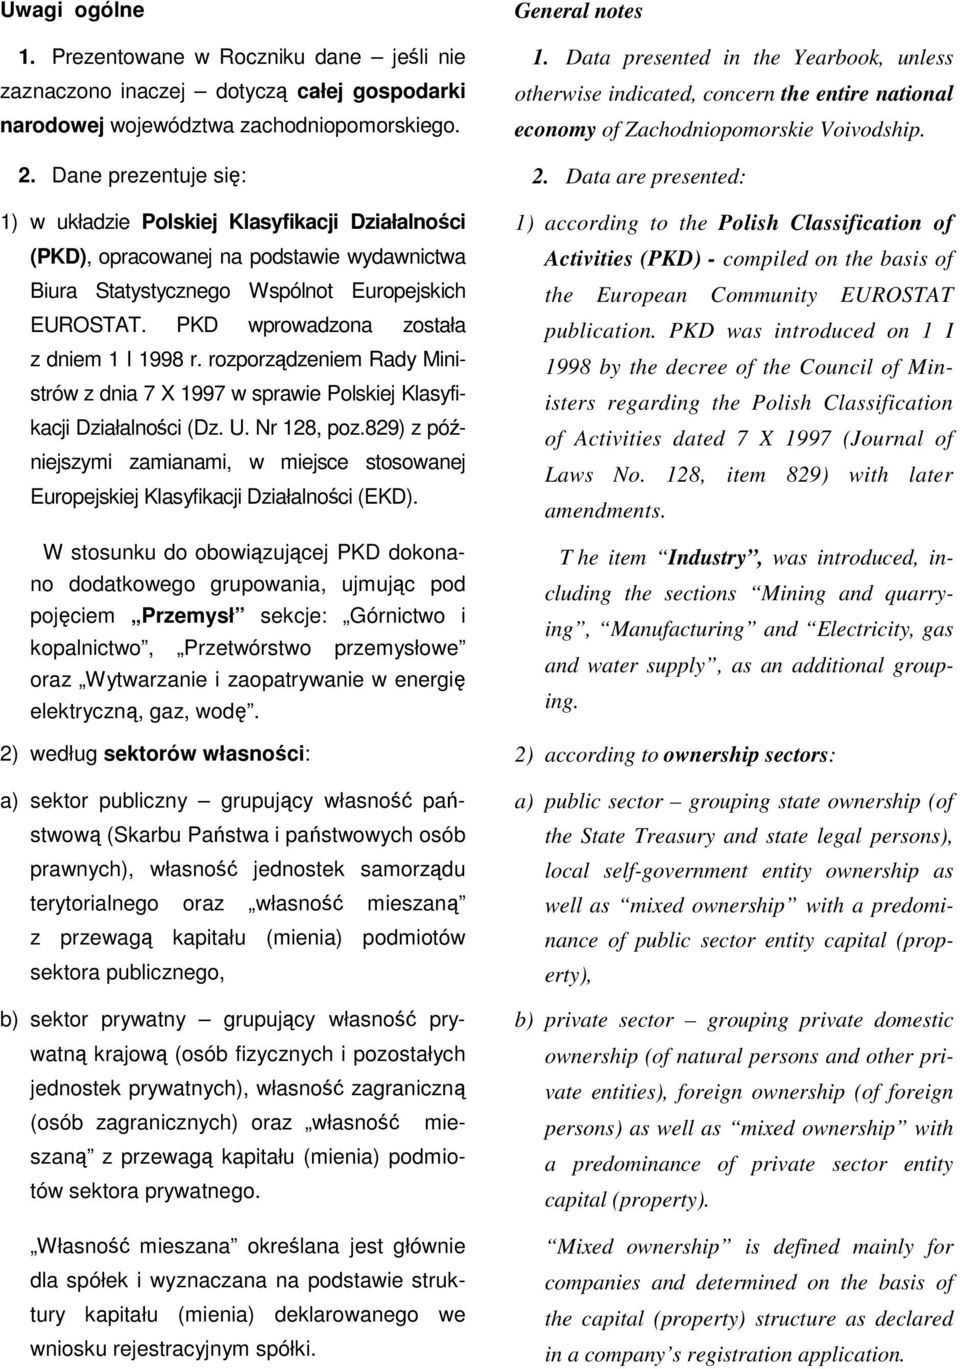 PKD wprowadzona została z dniem 1 I 1998 r. rozporządzeniem Rady Ministrów z dnia 7 X 1997 w sprawie Polskiej Klasyfikacji Działalności (Dz. U. Nr 128, poz.